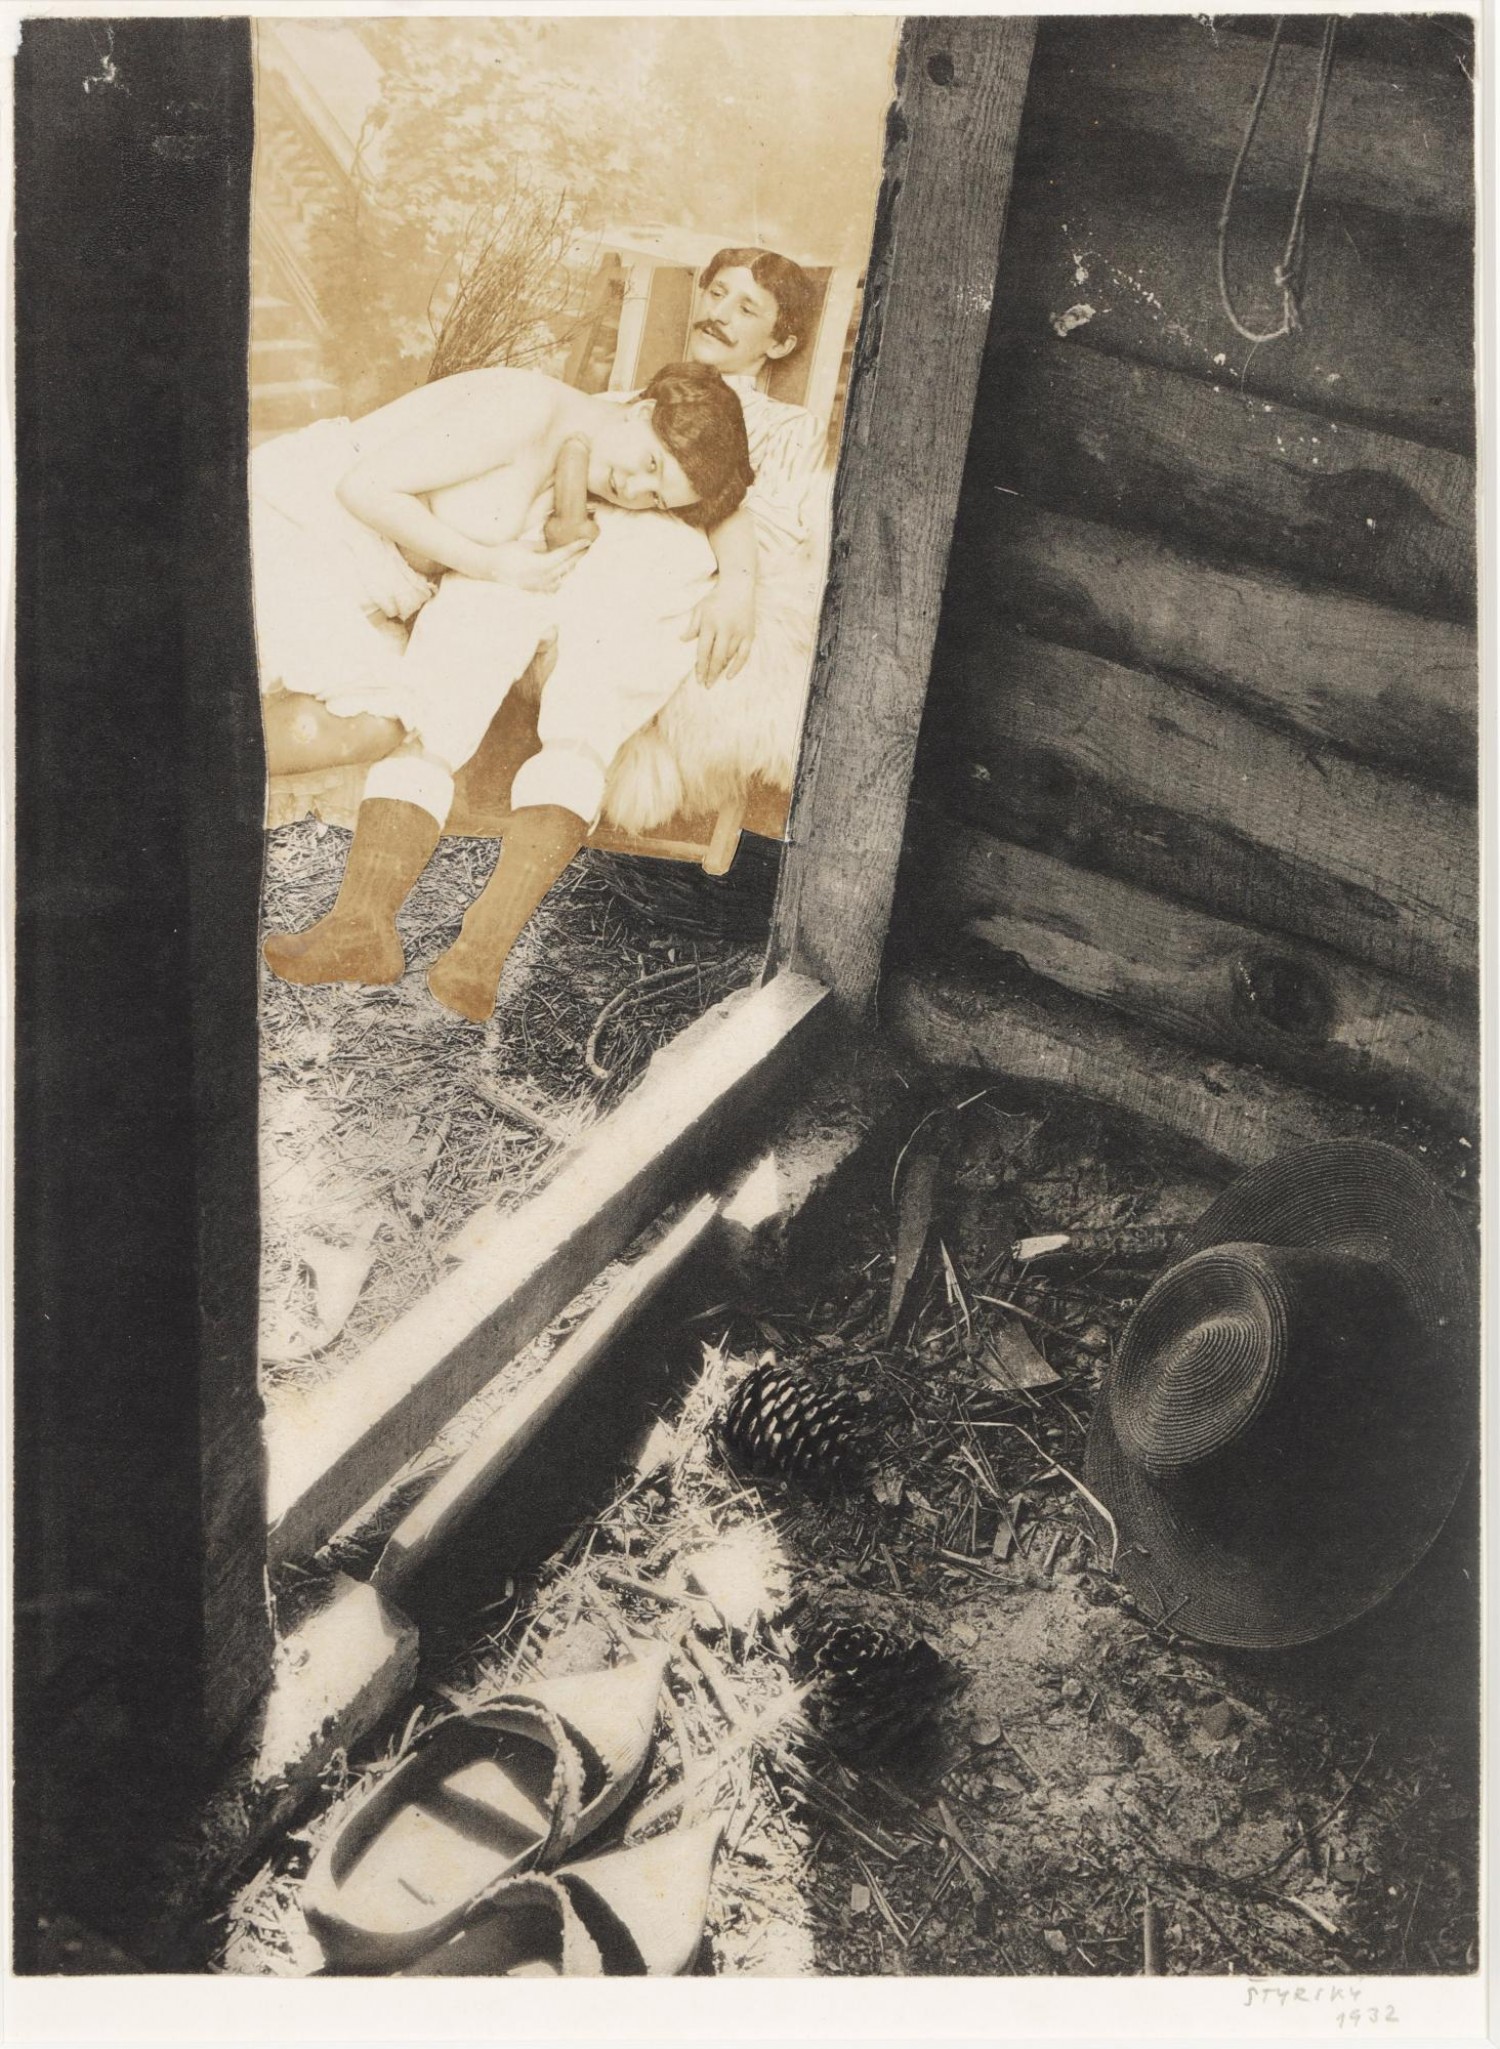 Jindřich Štyrský: Neděle na předměstí, 1932, koláž na papíře, 24 x 17,8 cm,  vyvolávací cena: 1 000 000 Kč (+ provize 21%) Adolf Loos Apartment and Gallery 8. 5. 2022